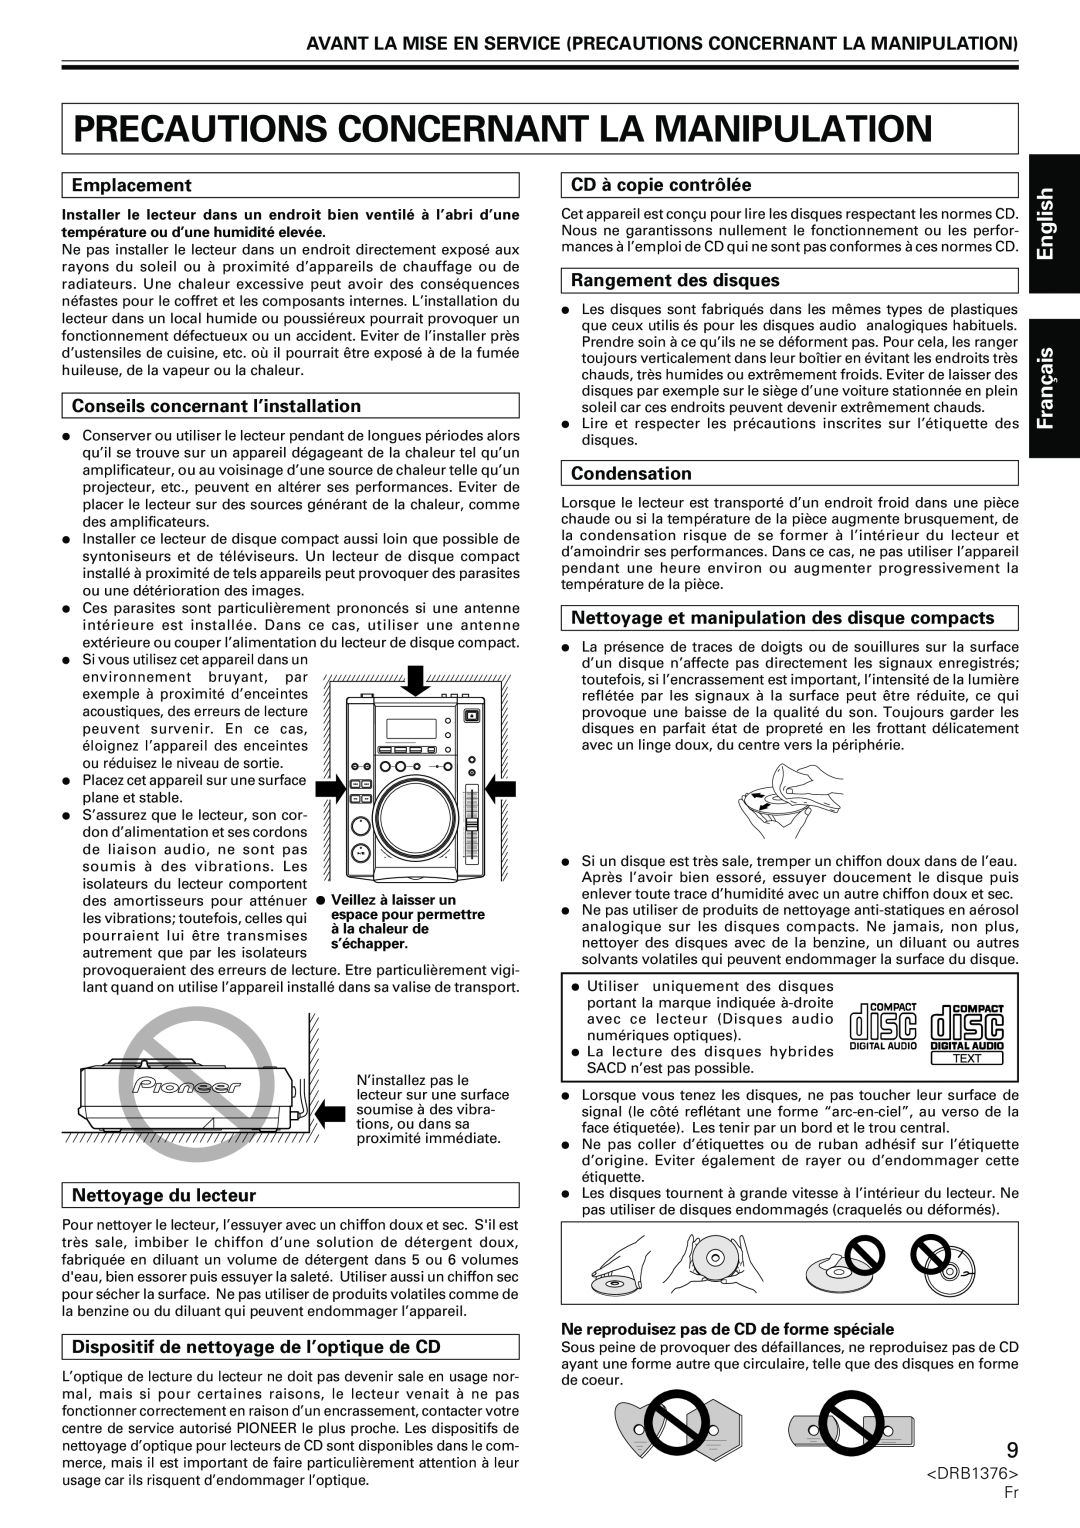 Pioneer CDJ-200 manual Precautions Concernant La Manipulation, Français, Emplacement, Conseils concernant l’installation 